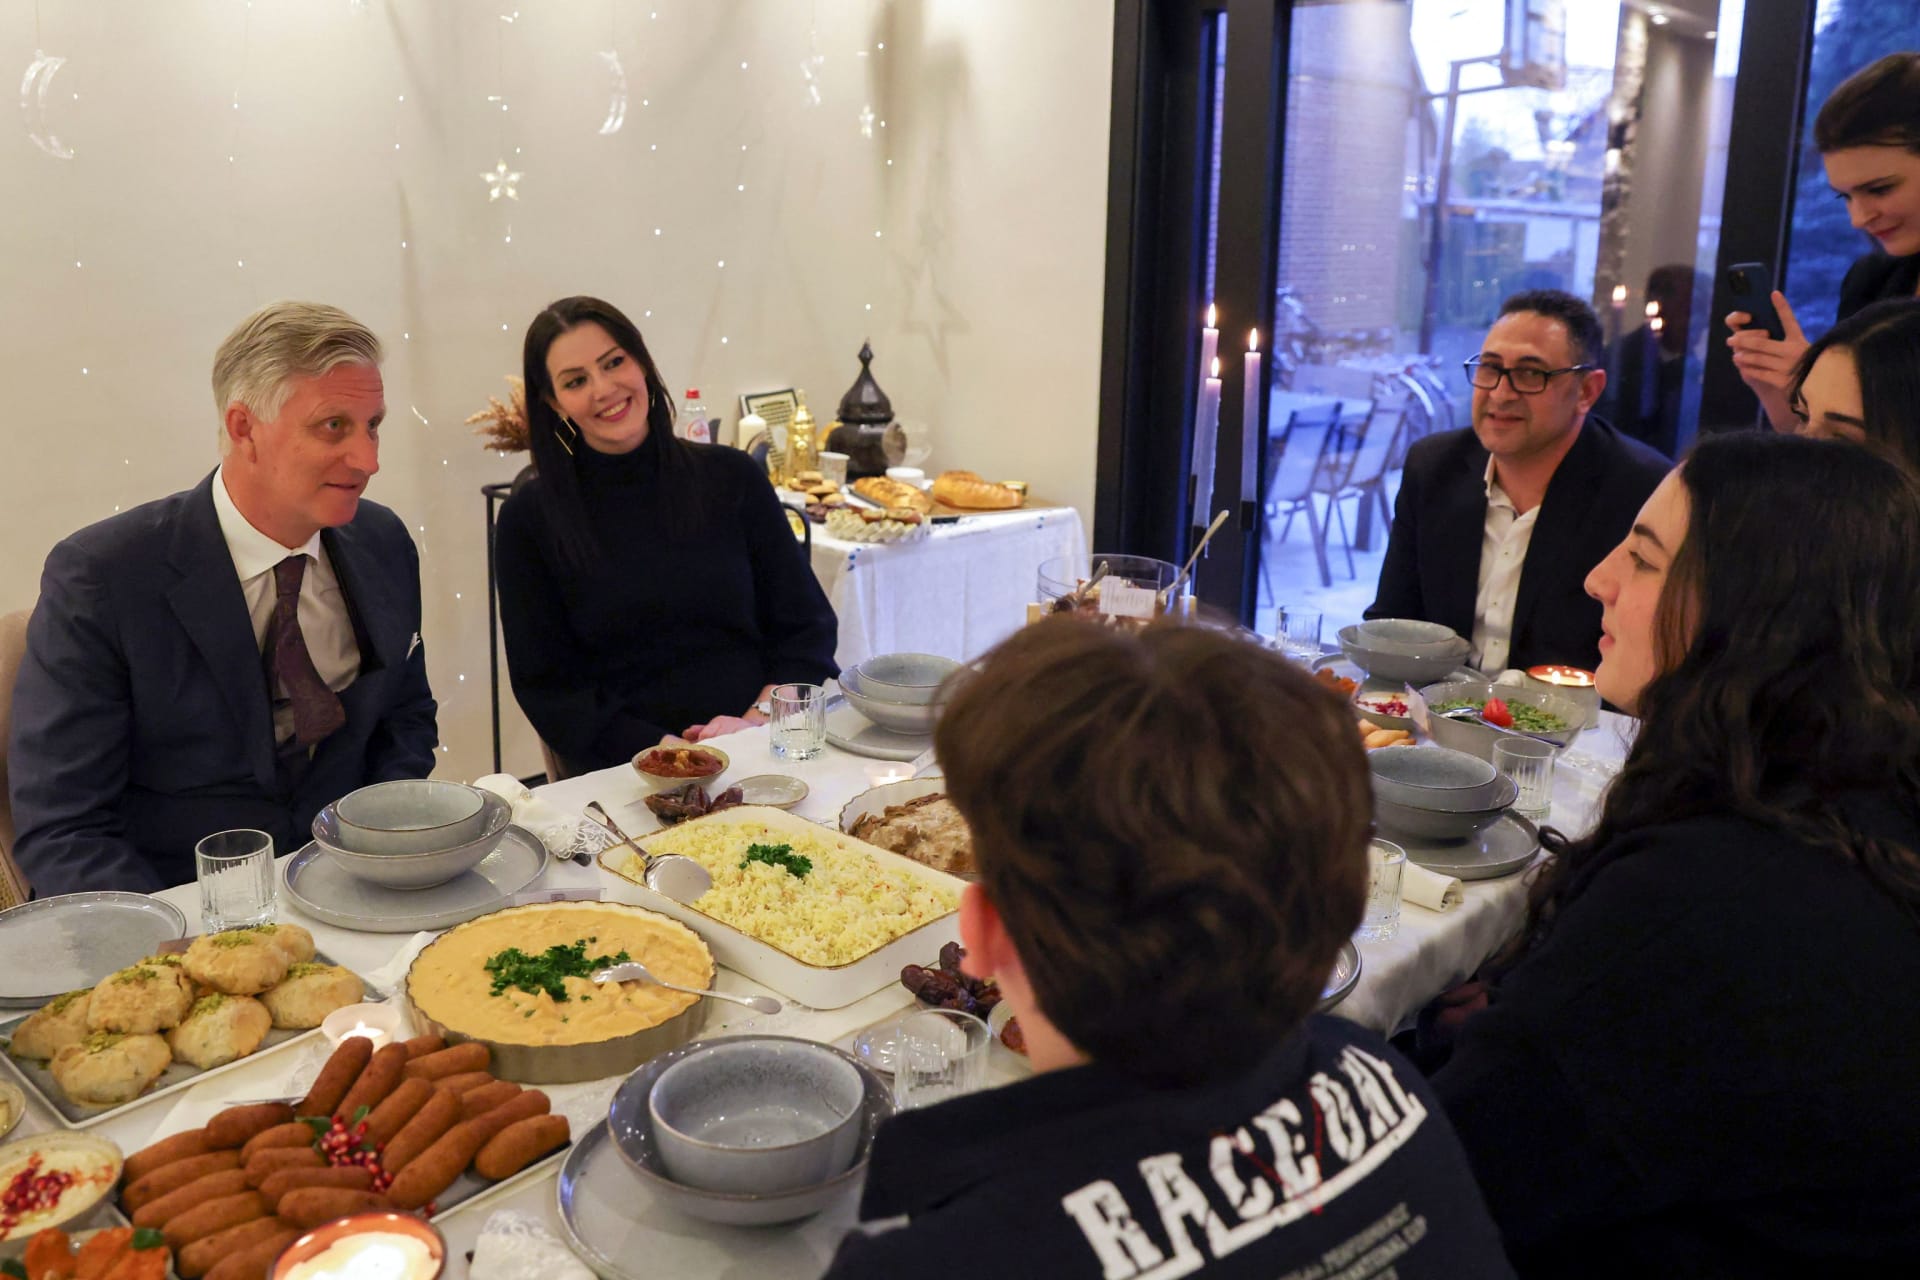 كيف هي تجربة تحضير إفطار لشخص ملكي؟ سورية استقبلت ملك بلجيكا برمضان تروي تجربتها